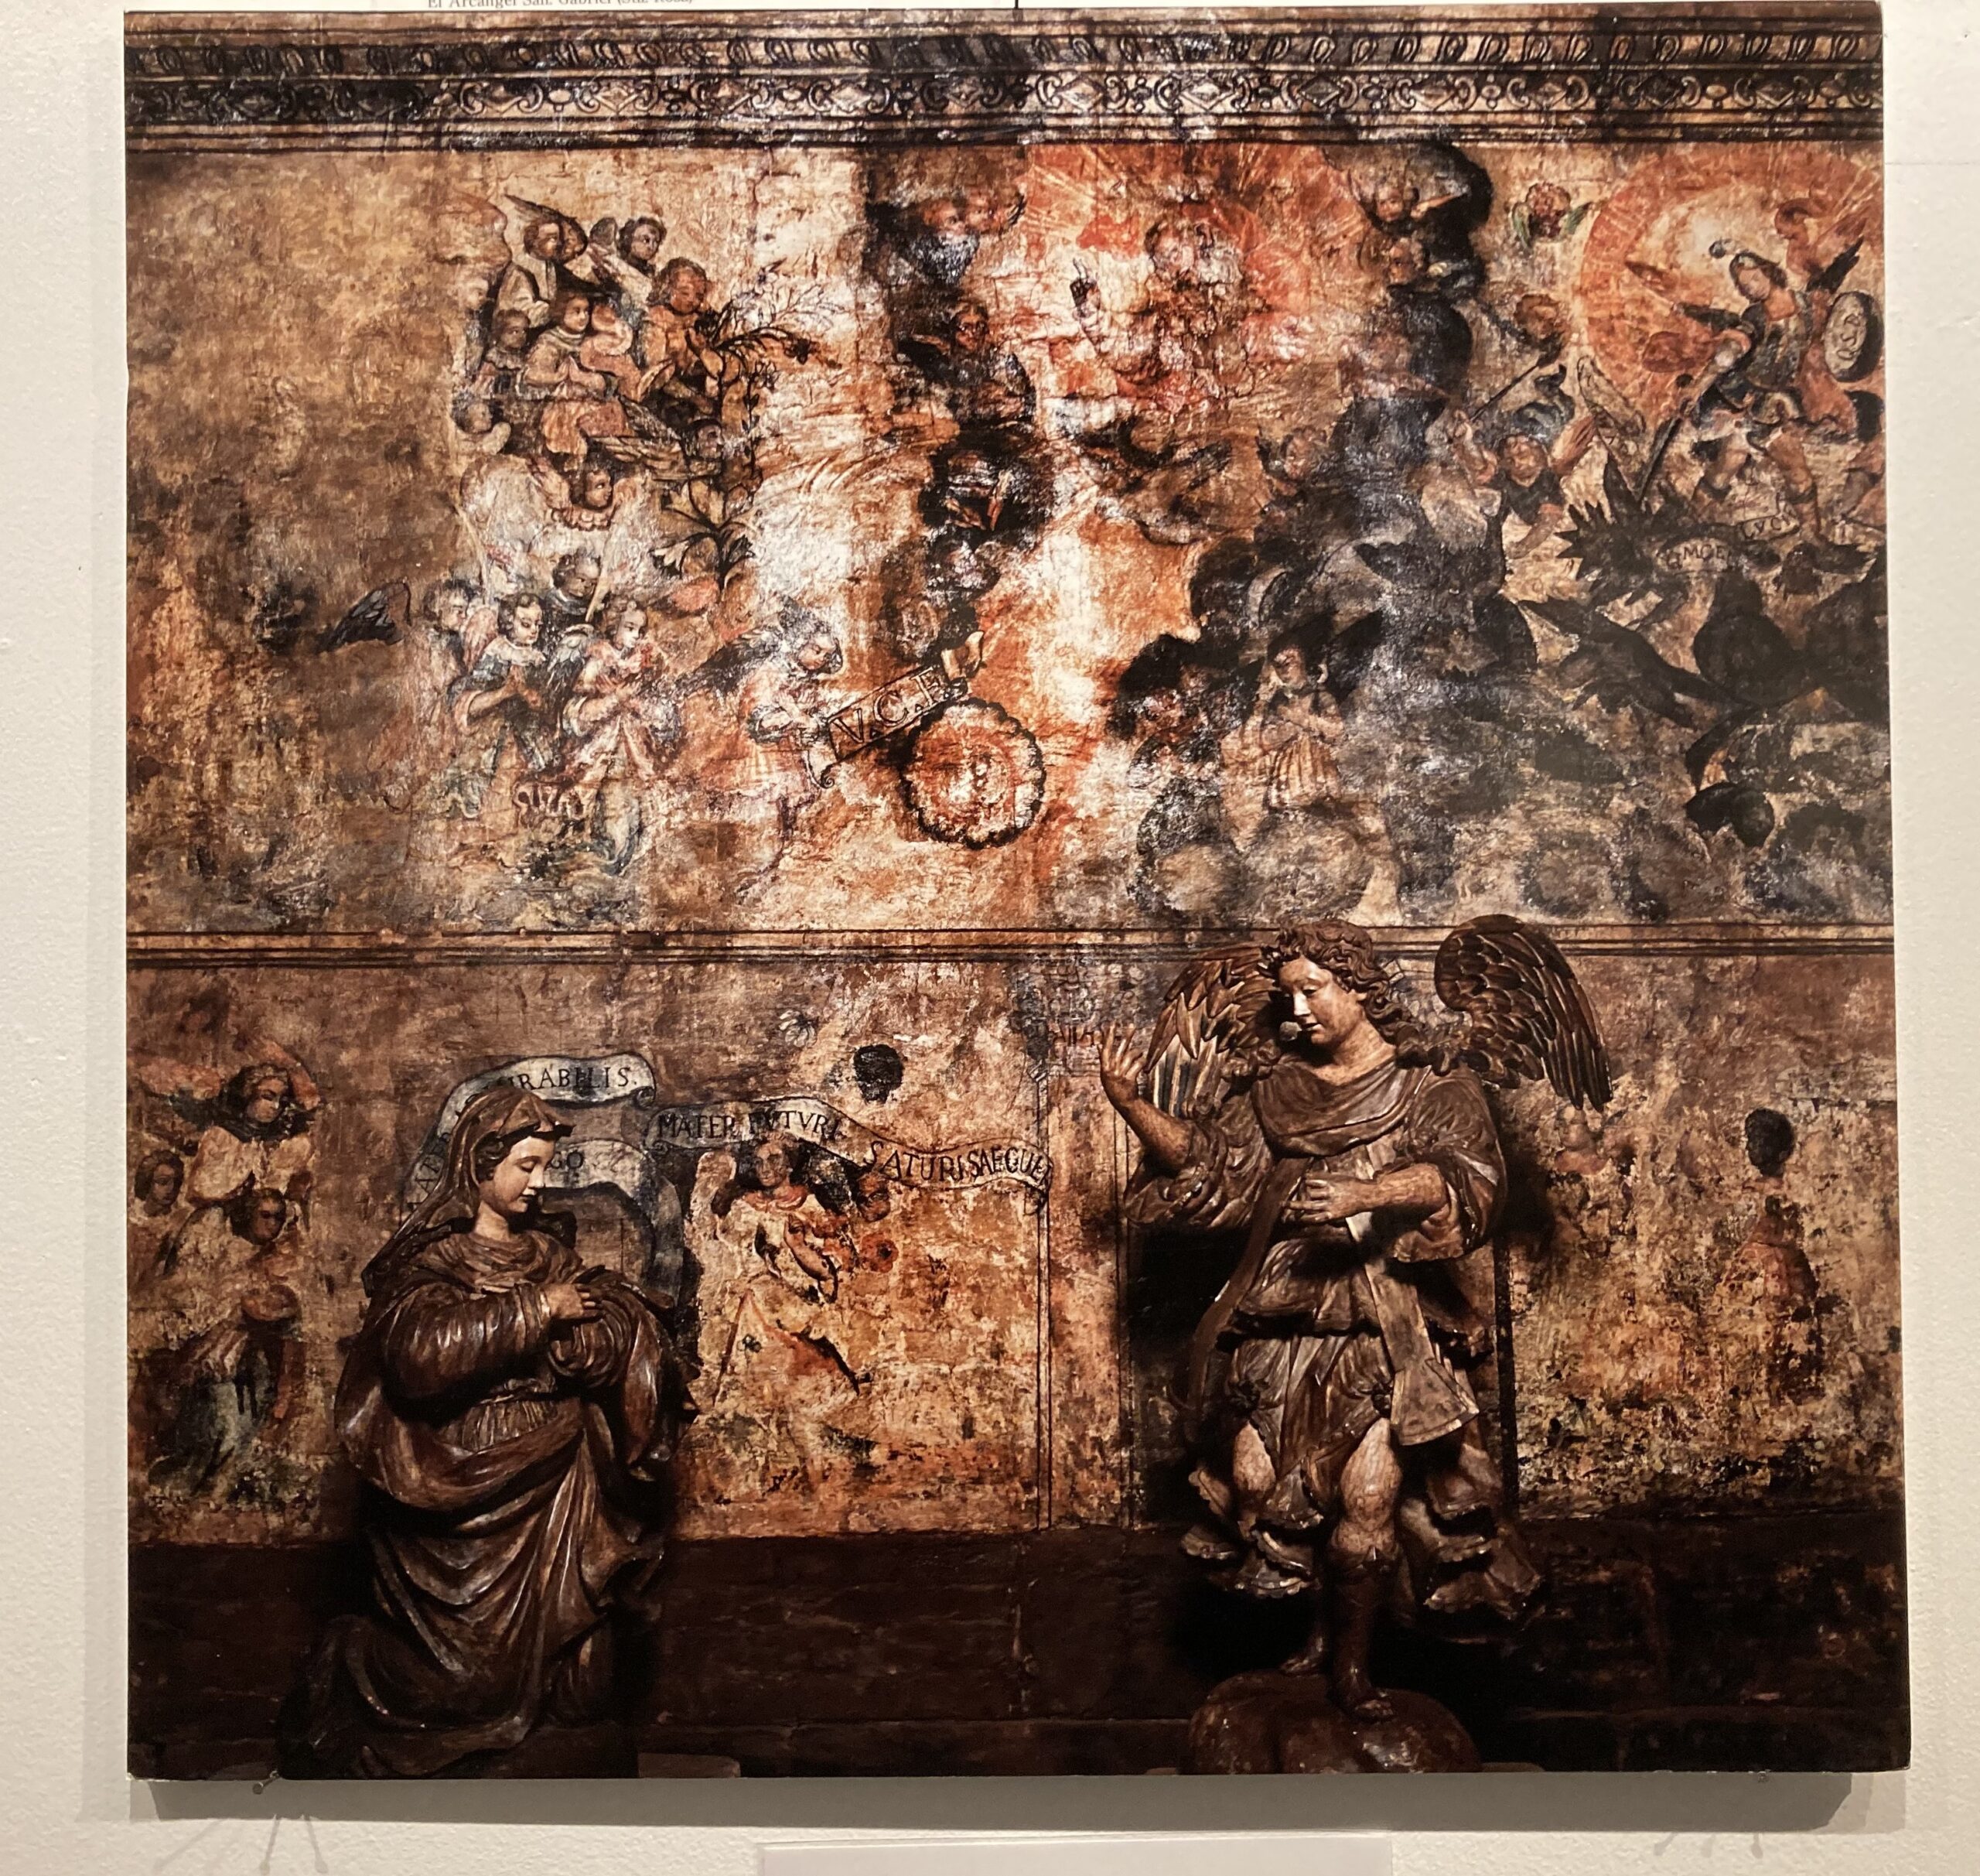 写真展の展示室に飾られたインディオの聖像のパネル写真の数々⑥